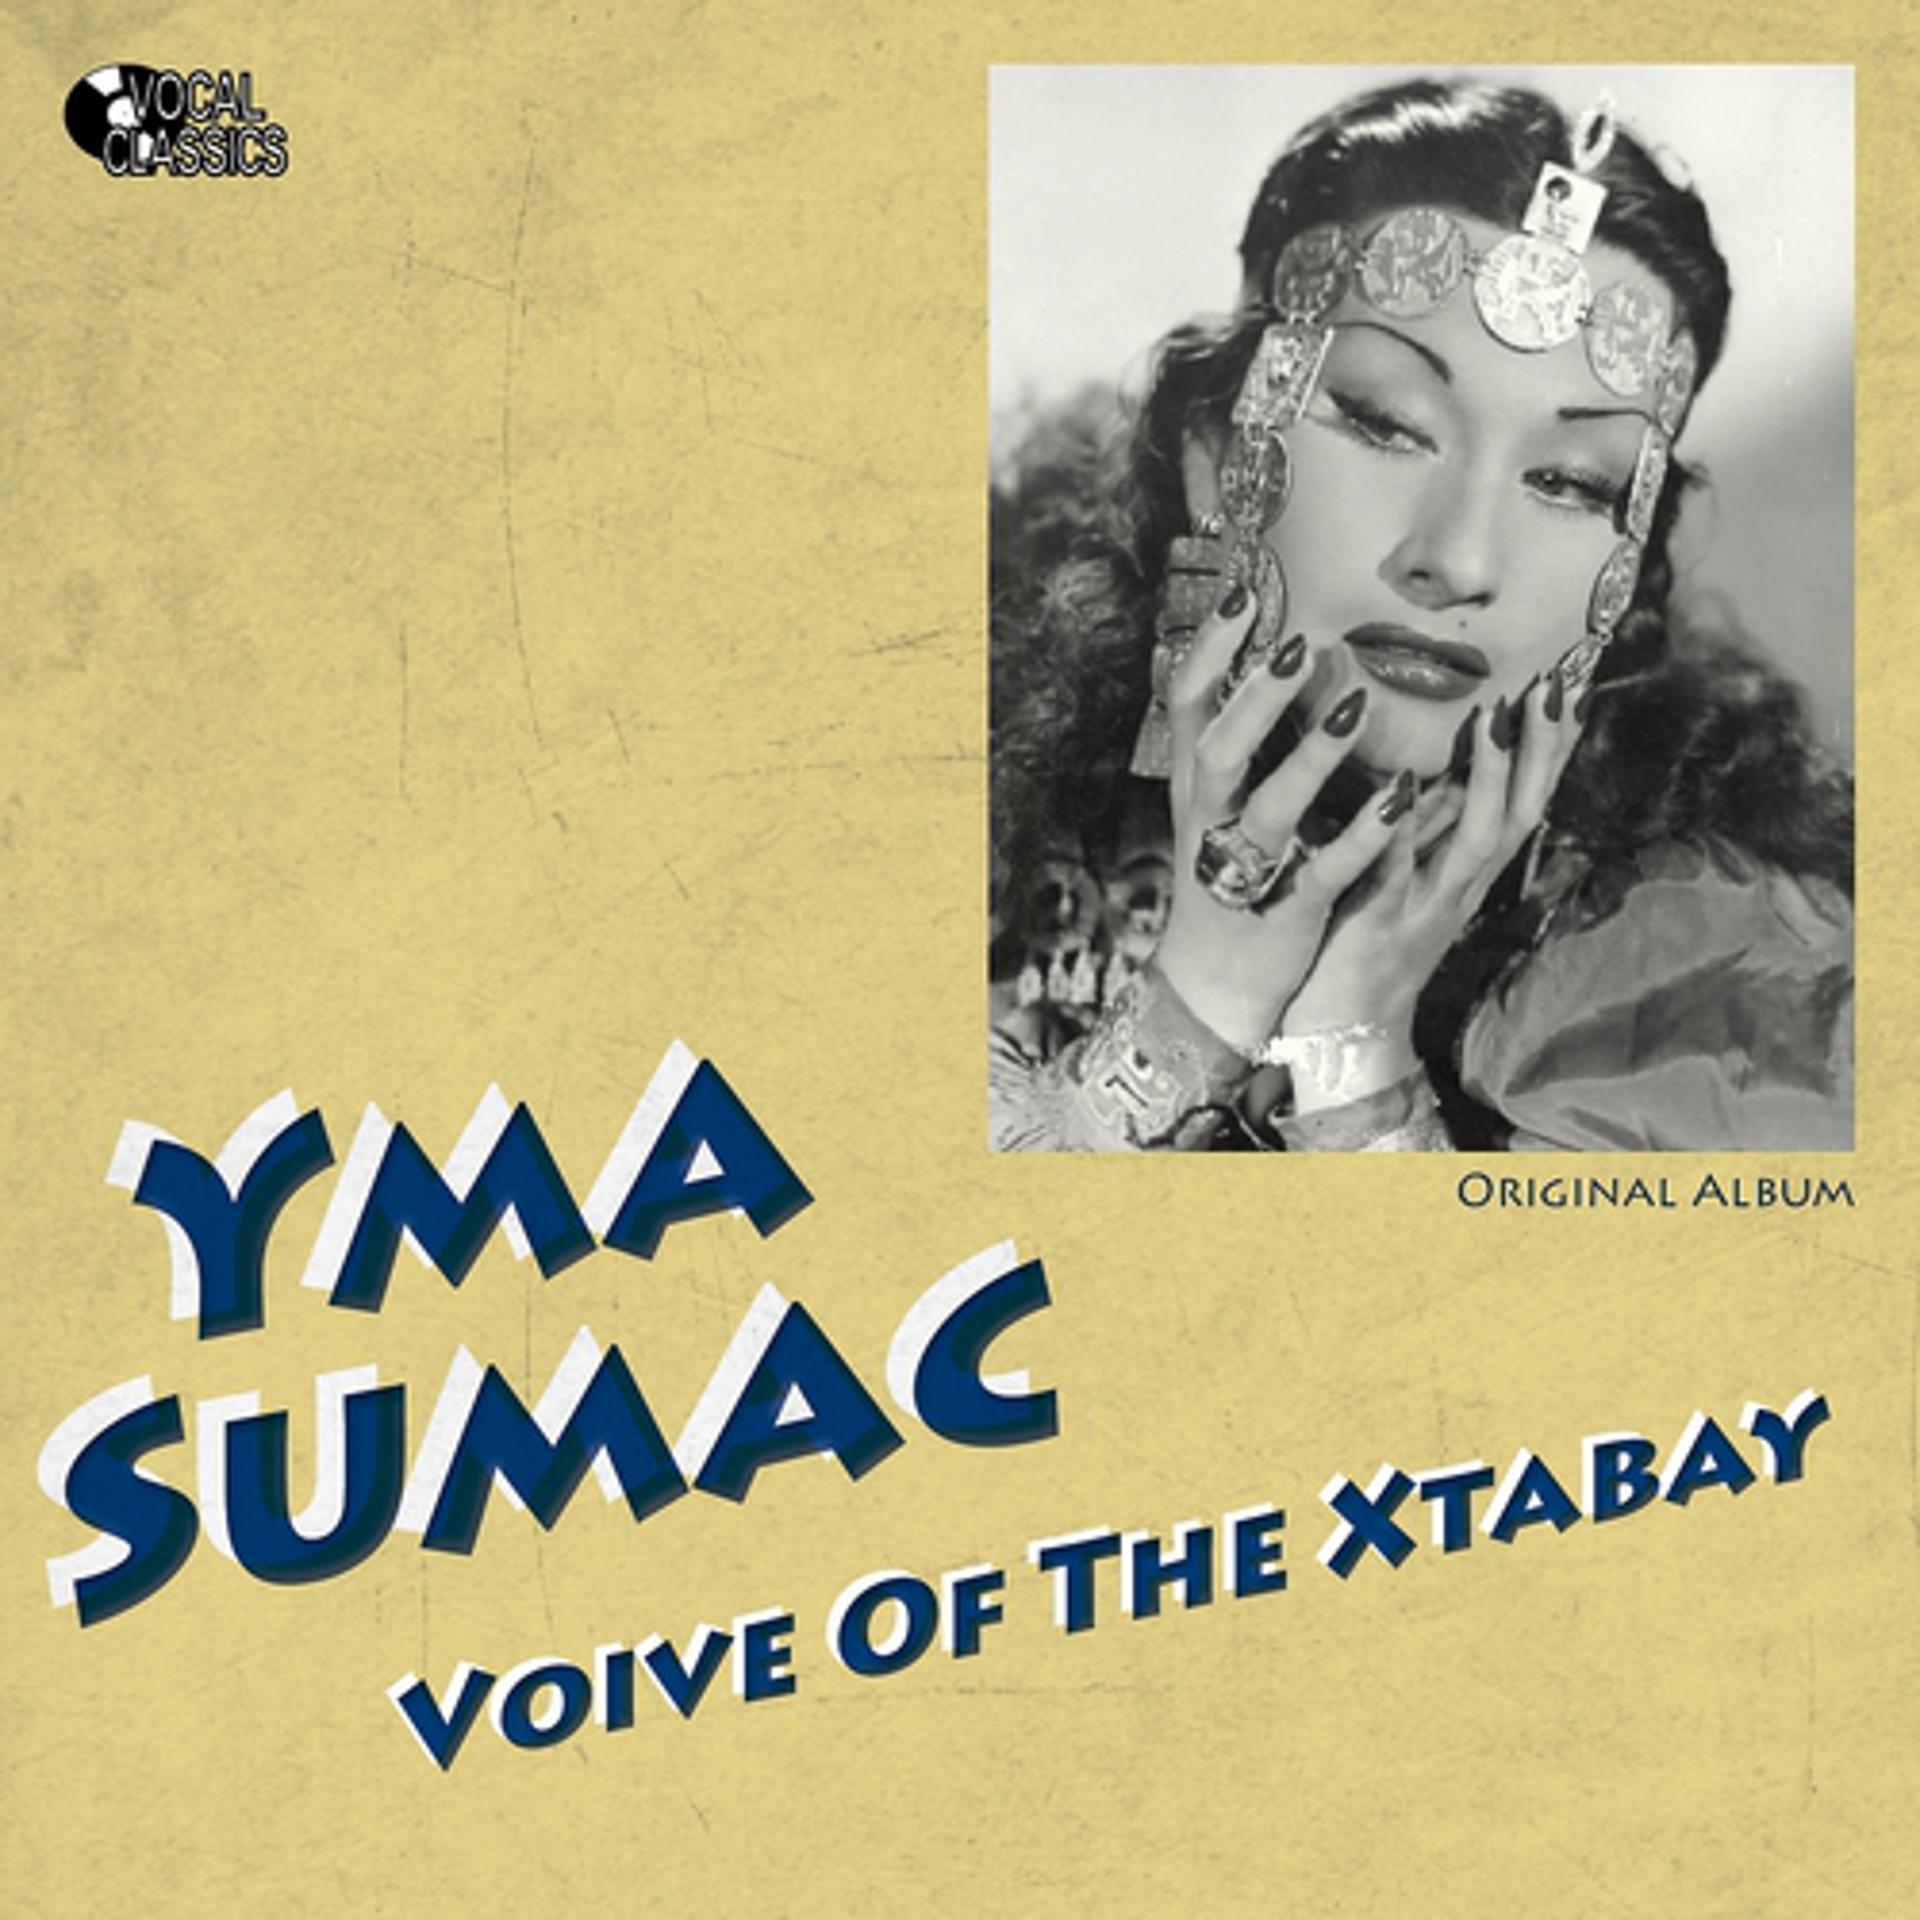 Постер альбома Voice of the Xtabay